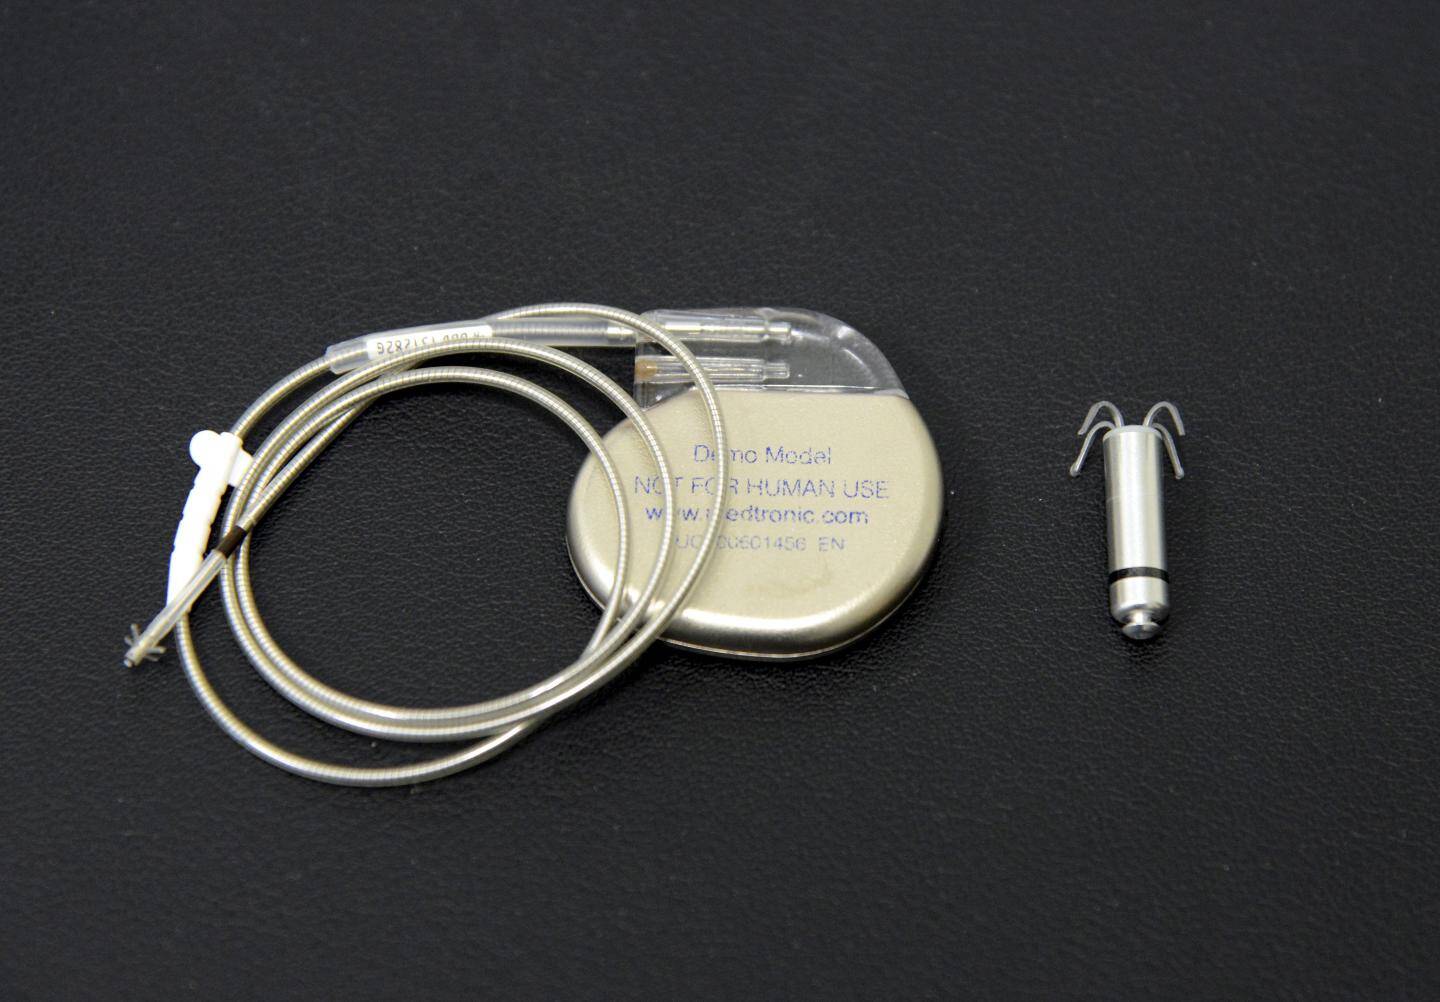 La pose de ce petit pacemaker ne nécessite aucune intervention chirurgicale invasive.